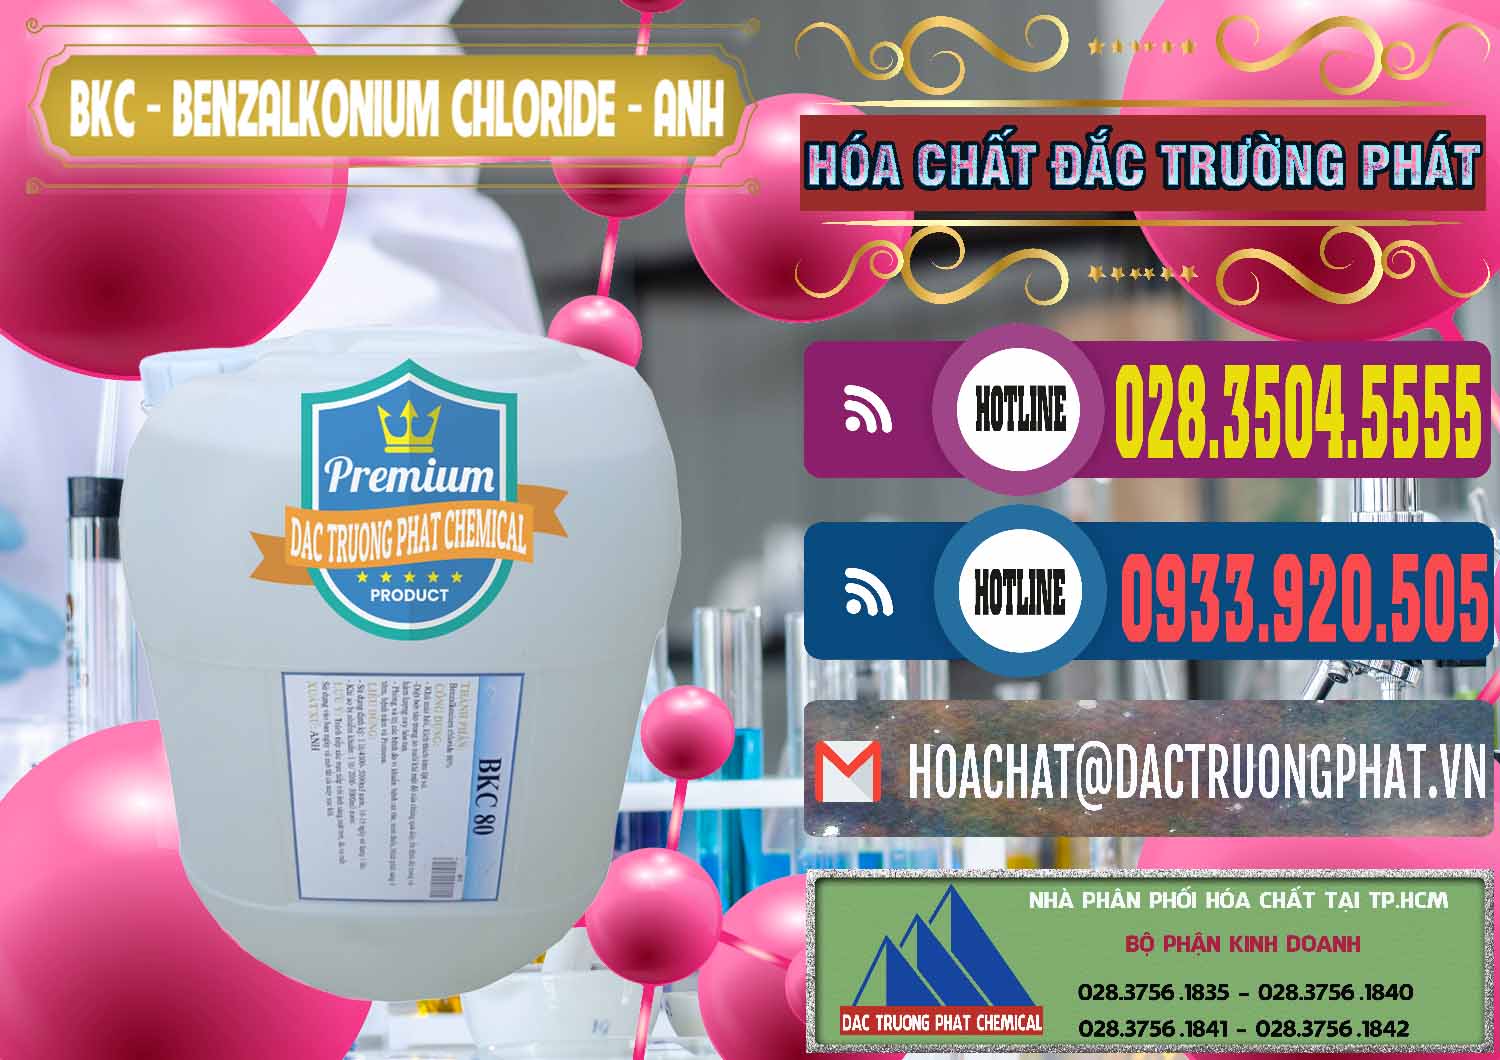 Chuyên phân phối và bán BKC - Benzalkonium Chloride Anh Quốc Uk Kingdoms - 0415 - Nơi nhập khẩu & phân phối hóa chất tại TP.HCM - muabanhoachat.com.vn